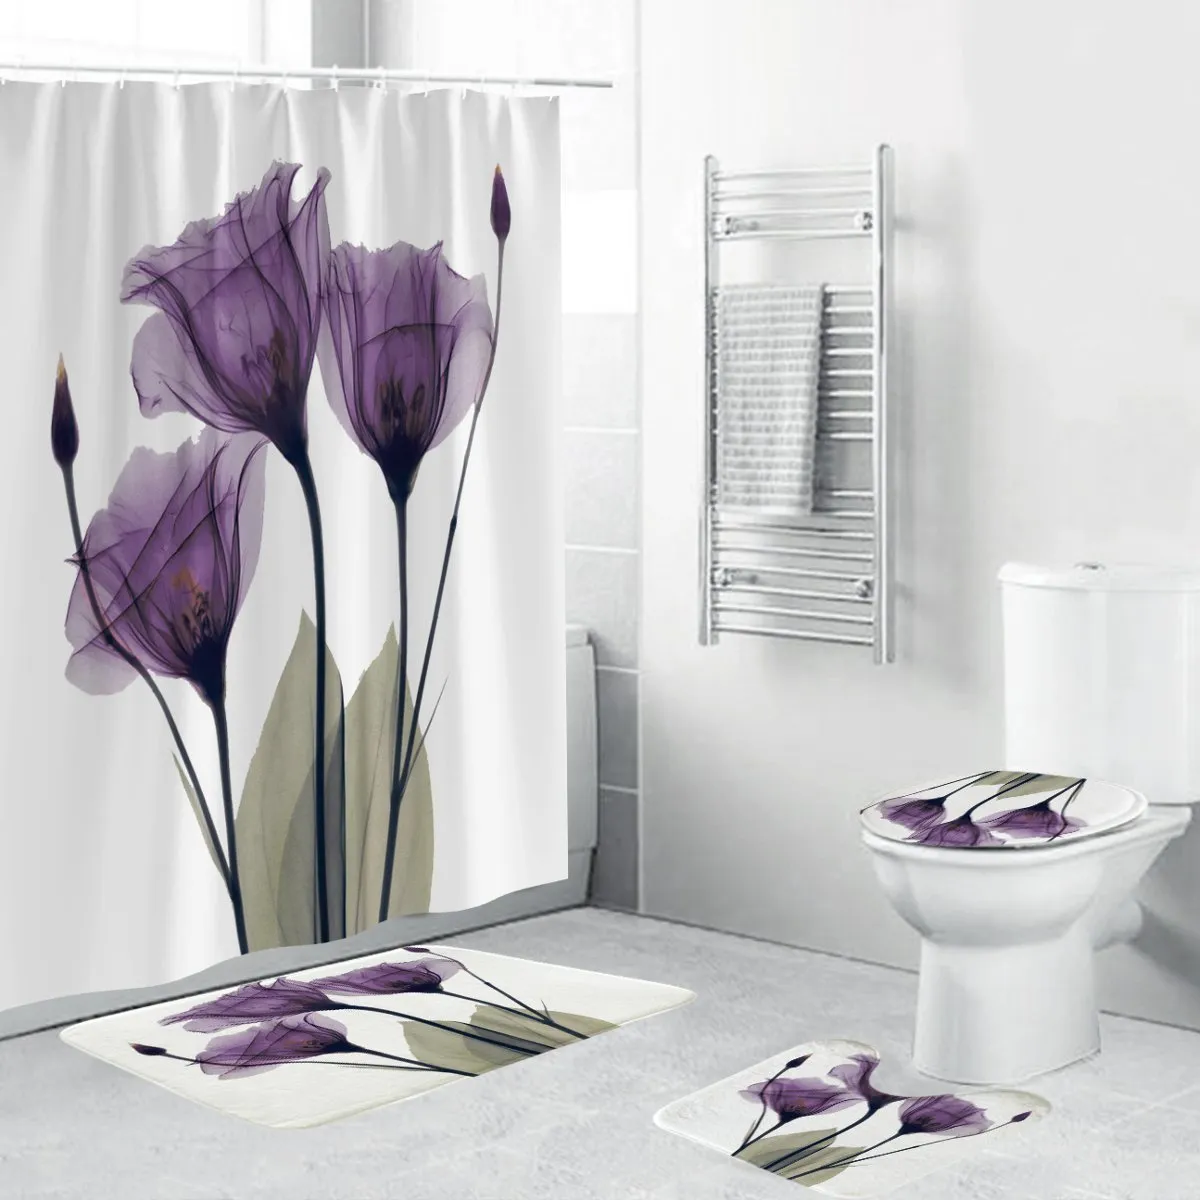 4ピースのフランネル表面バスルームマットシャワーカーテン滑り止め敷物揚げトイレカバーバスマットセット紫色の花プリント装飾ホームT200711